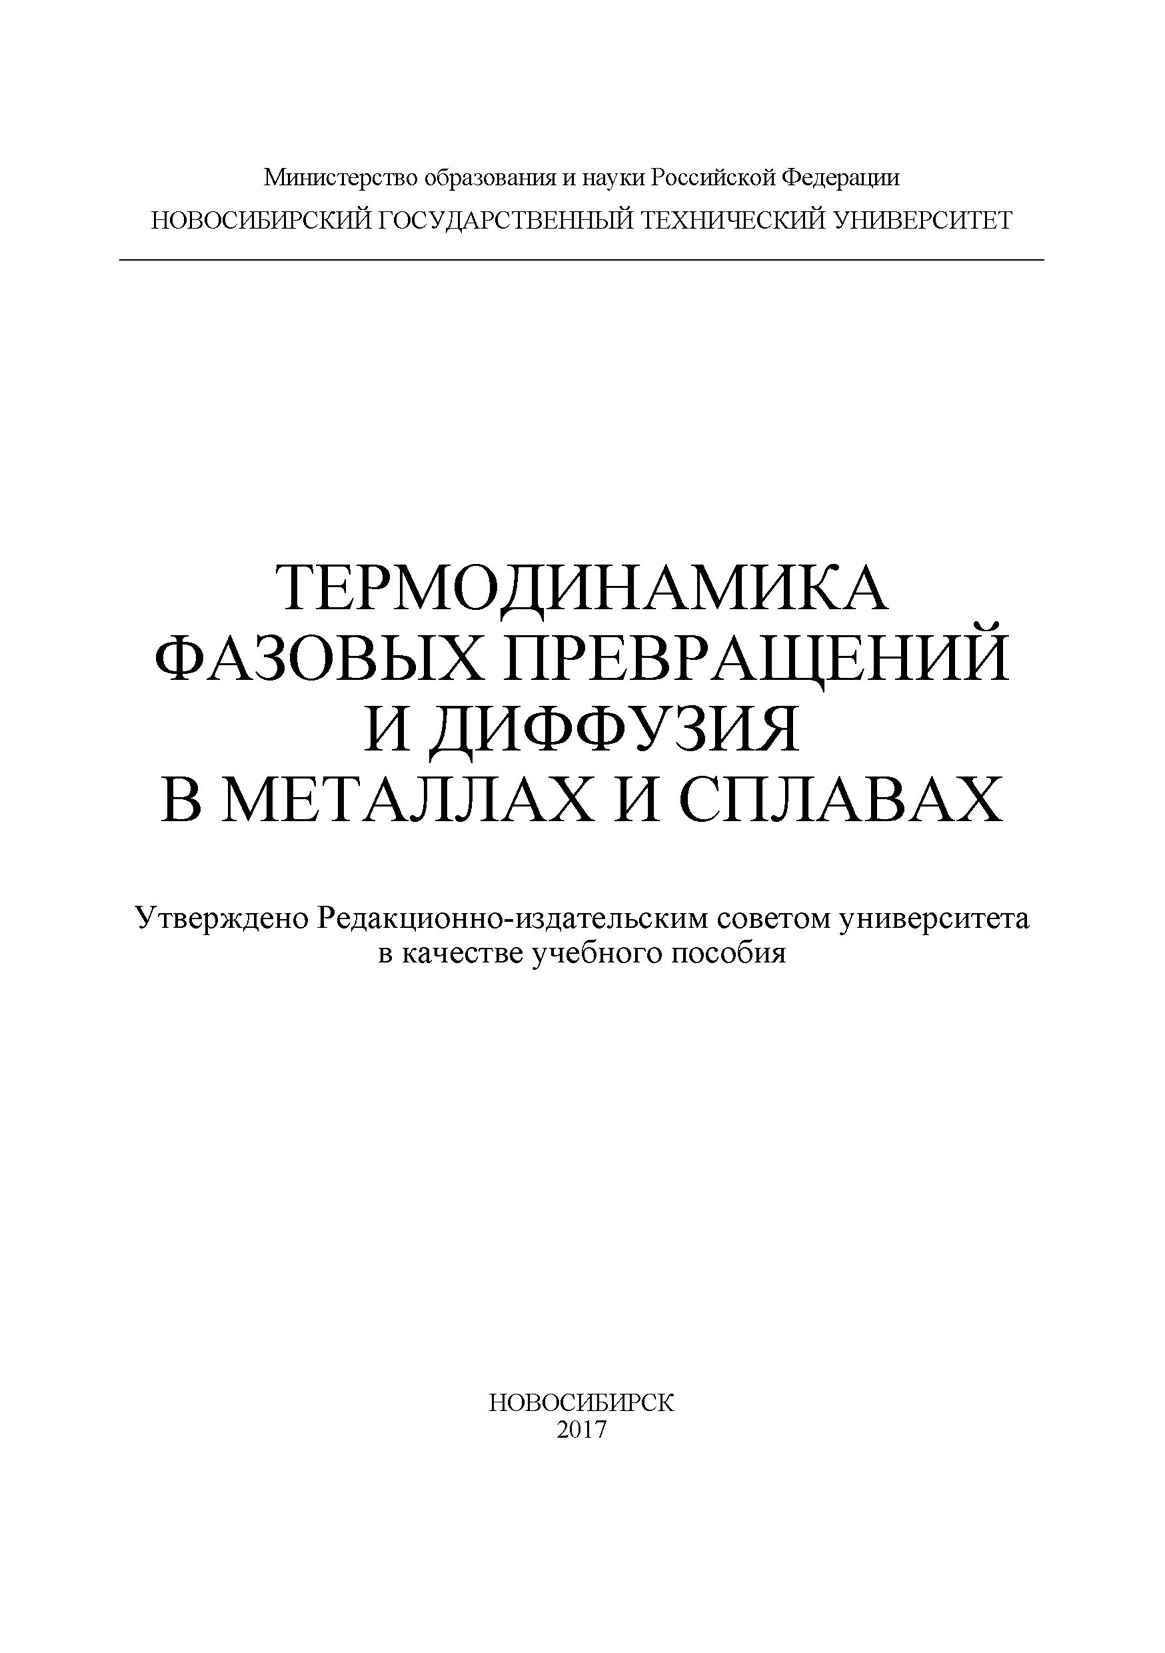 И. А. Батаев Термодинамика фазовых превращений и диффузия в металлах и сплавах